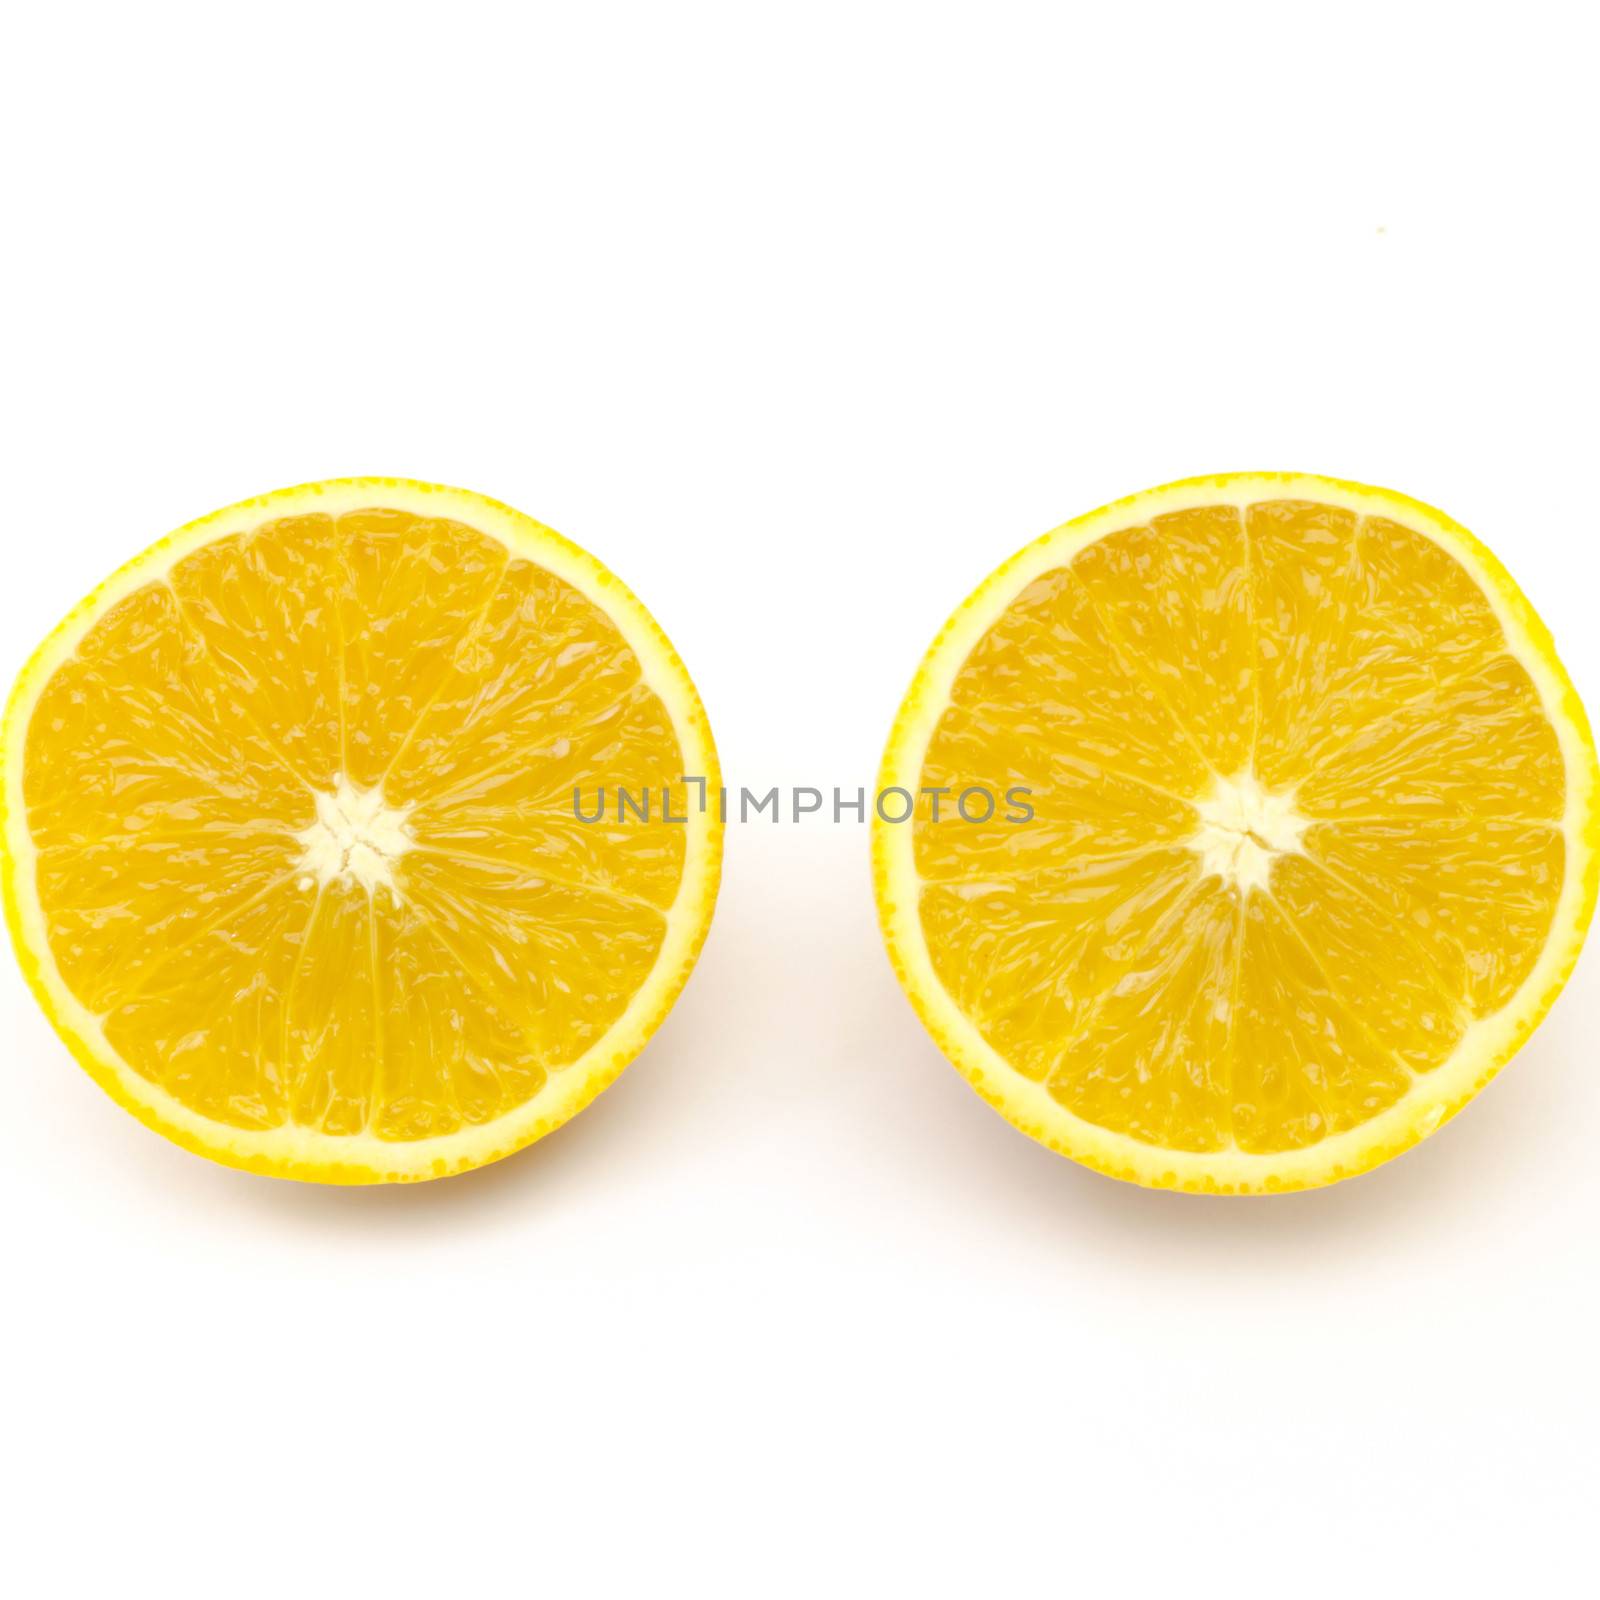 orange fruit isolated on white by ammza12